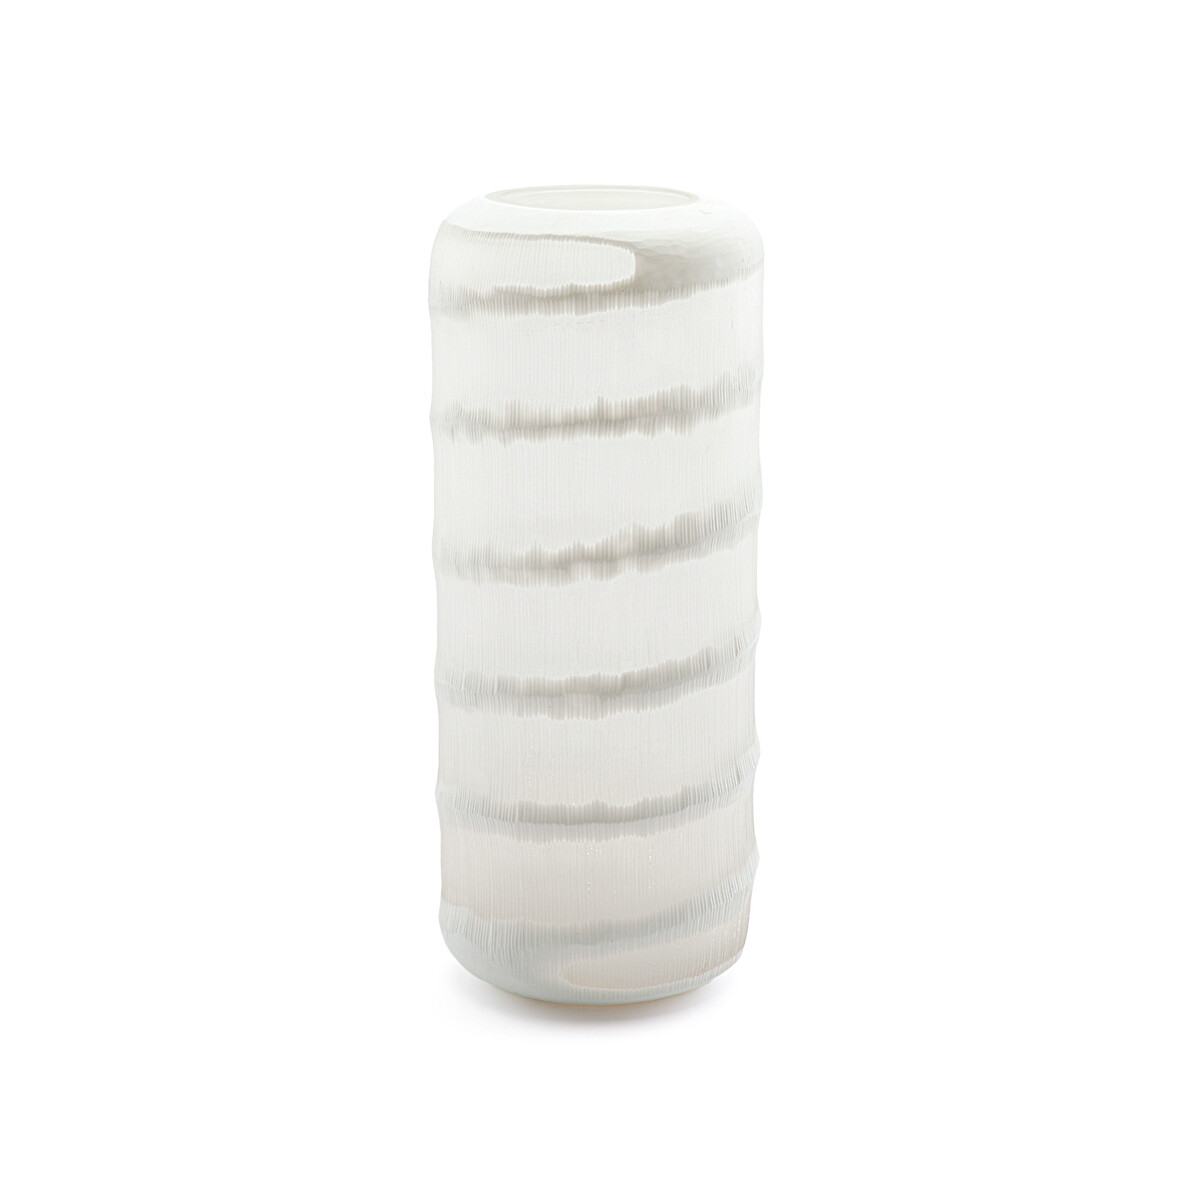 Ваза из матового стекла кракле Topina единый размер белый ваза катерина цвет серый матовый